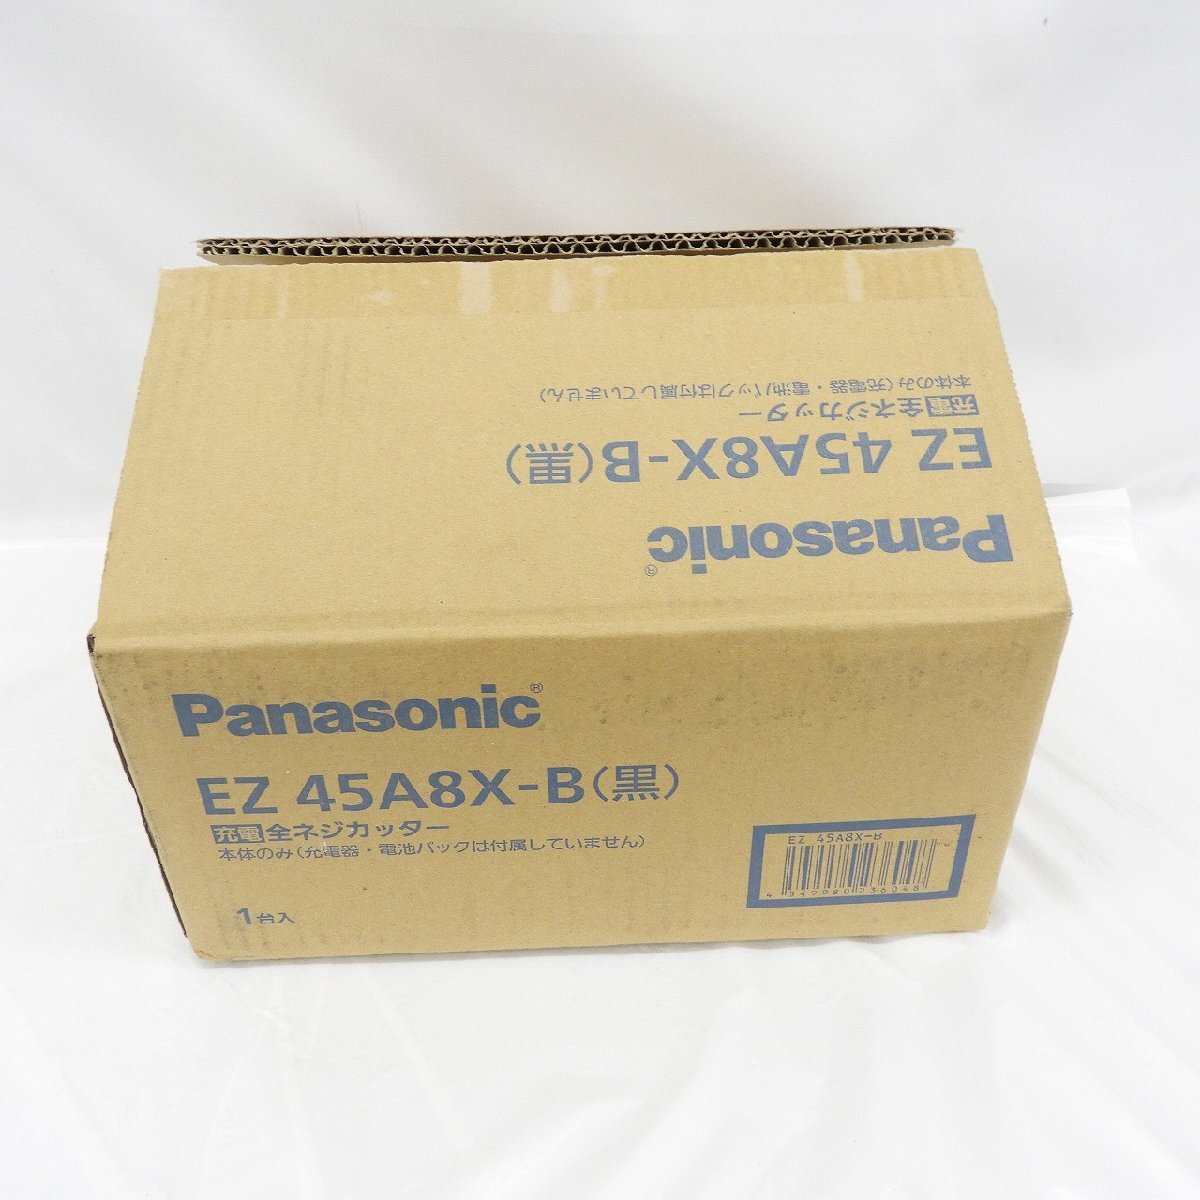 【未使用品】Panasonic 充電 全ネジカッター EZ45A8X-B 本体のみモデル(充電器・電池パック別販売) ※箱ダメージ有 838180816 0517_画像6